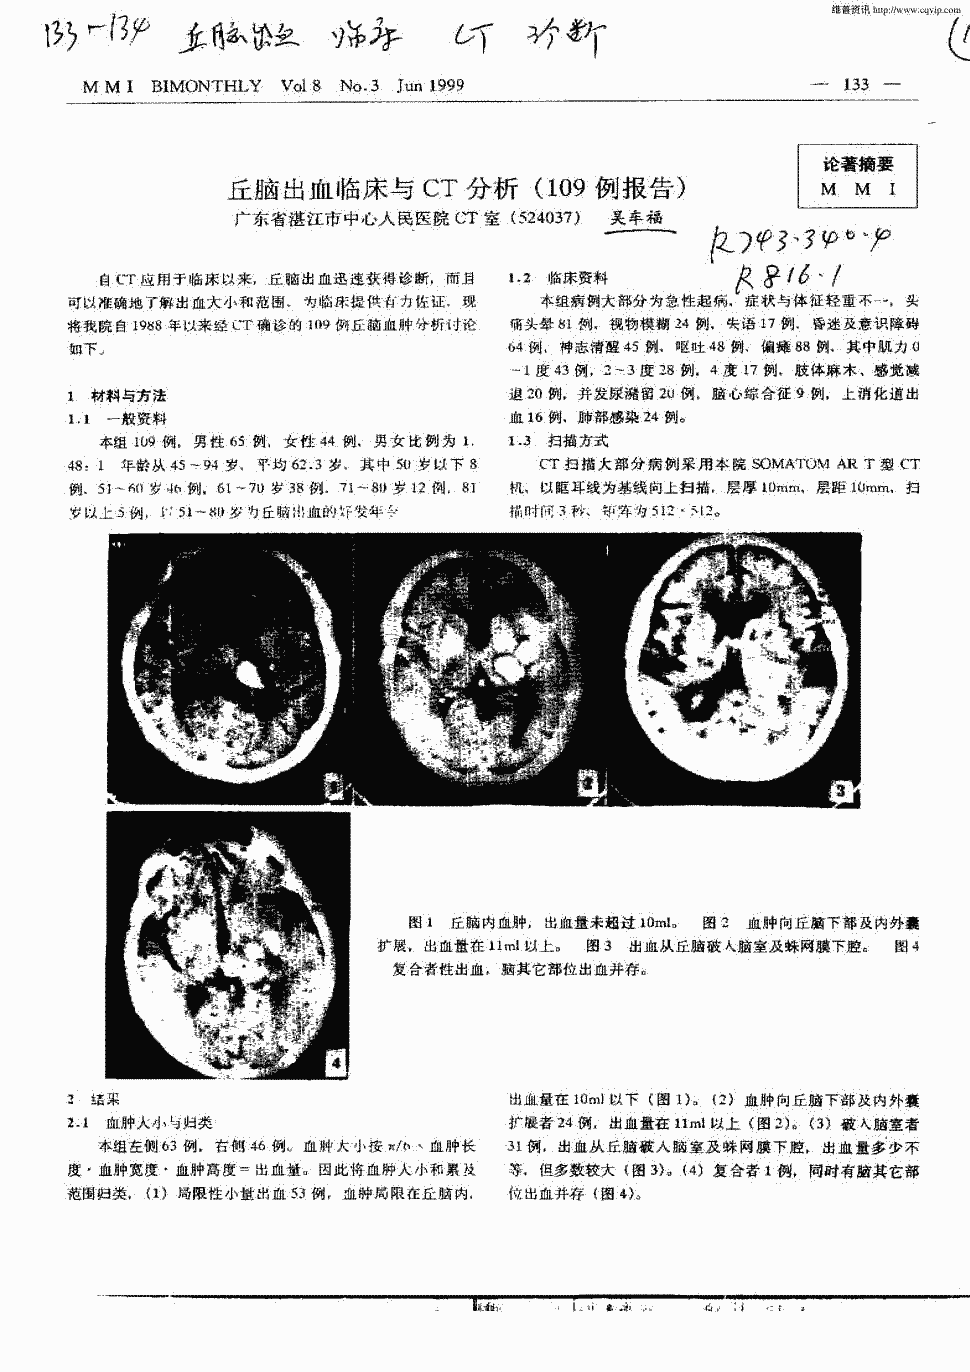 1999年第3期 133-134,共2页吴车福关键词:丘脑出血临床ct诊断